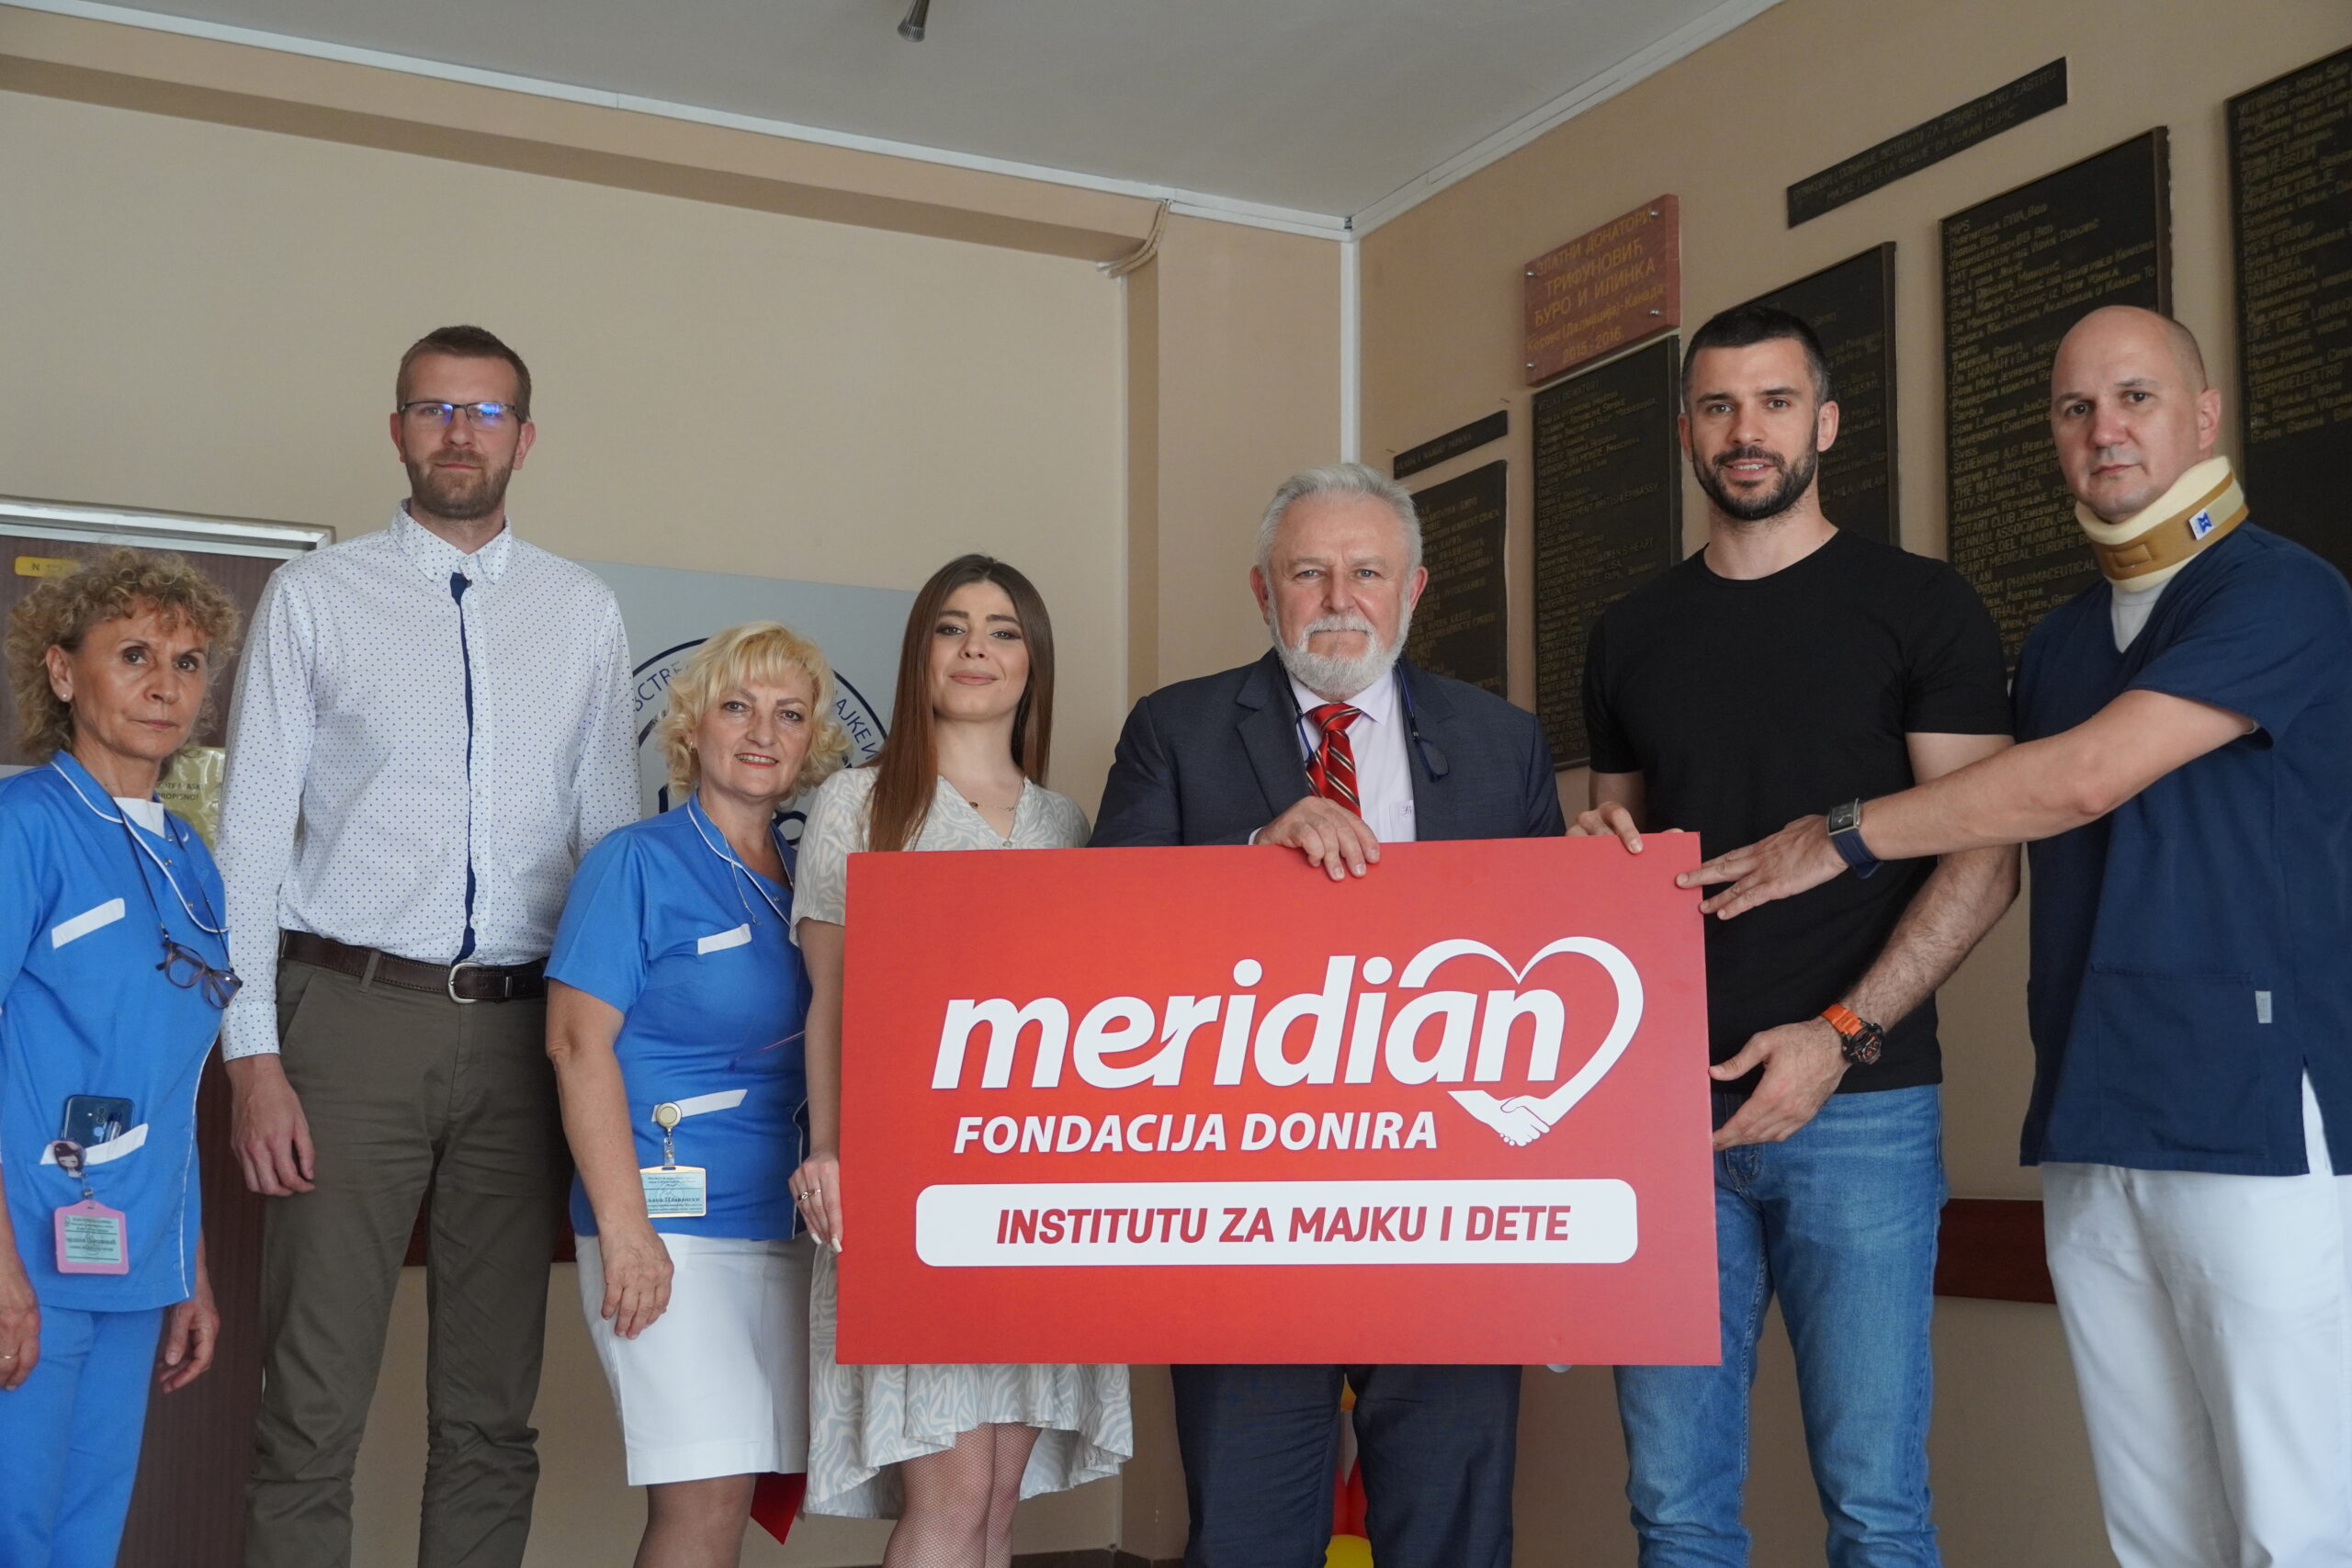 Da praznici svima budu isti: Meridian fondacija i Crvena zvezda Meridianbet uručili donaciju Institutu za majku i dete